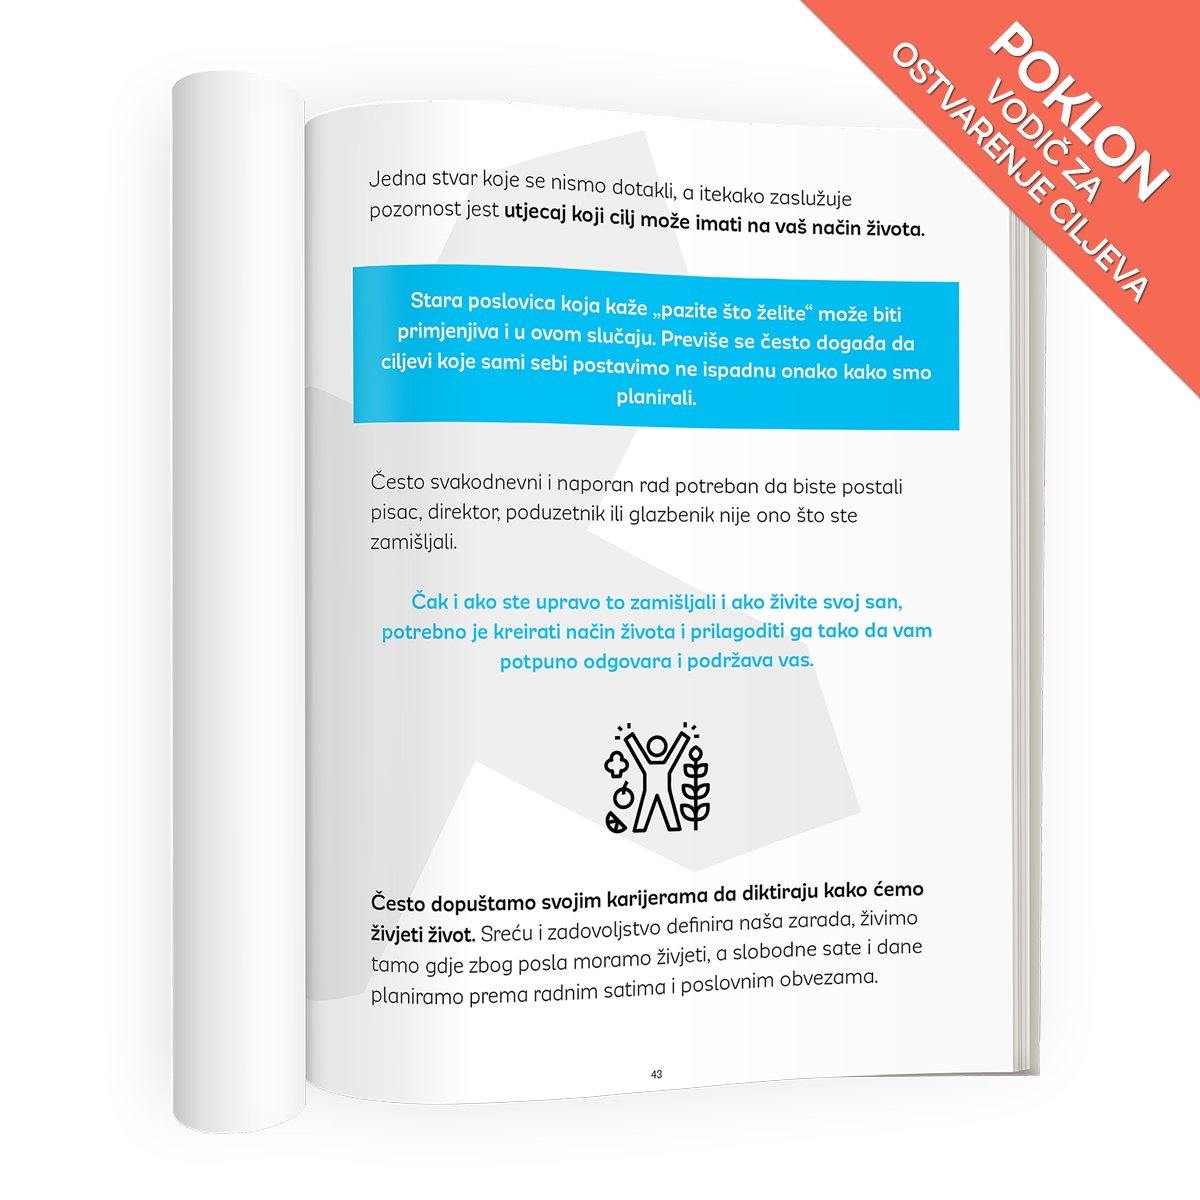 Vodič za ostvarenje ciljeva, pdf knjiga, poklon uz kupnju.